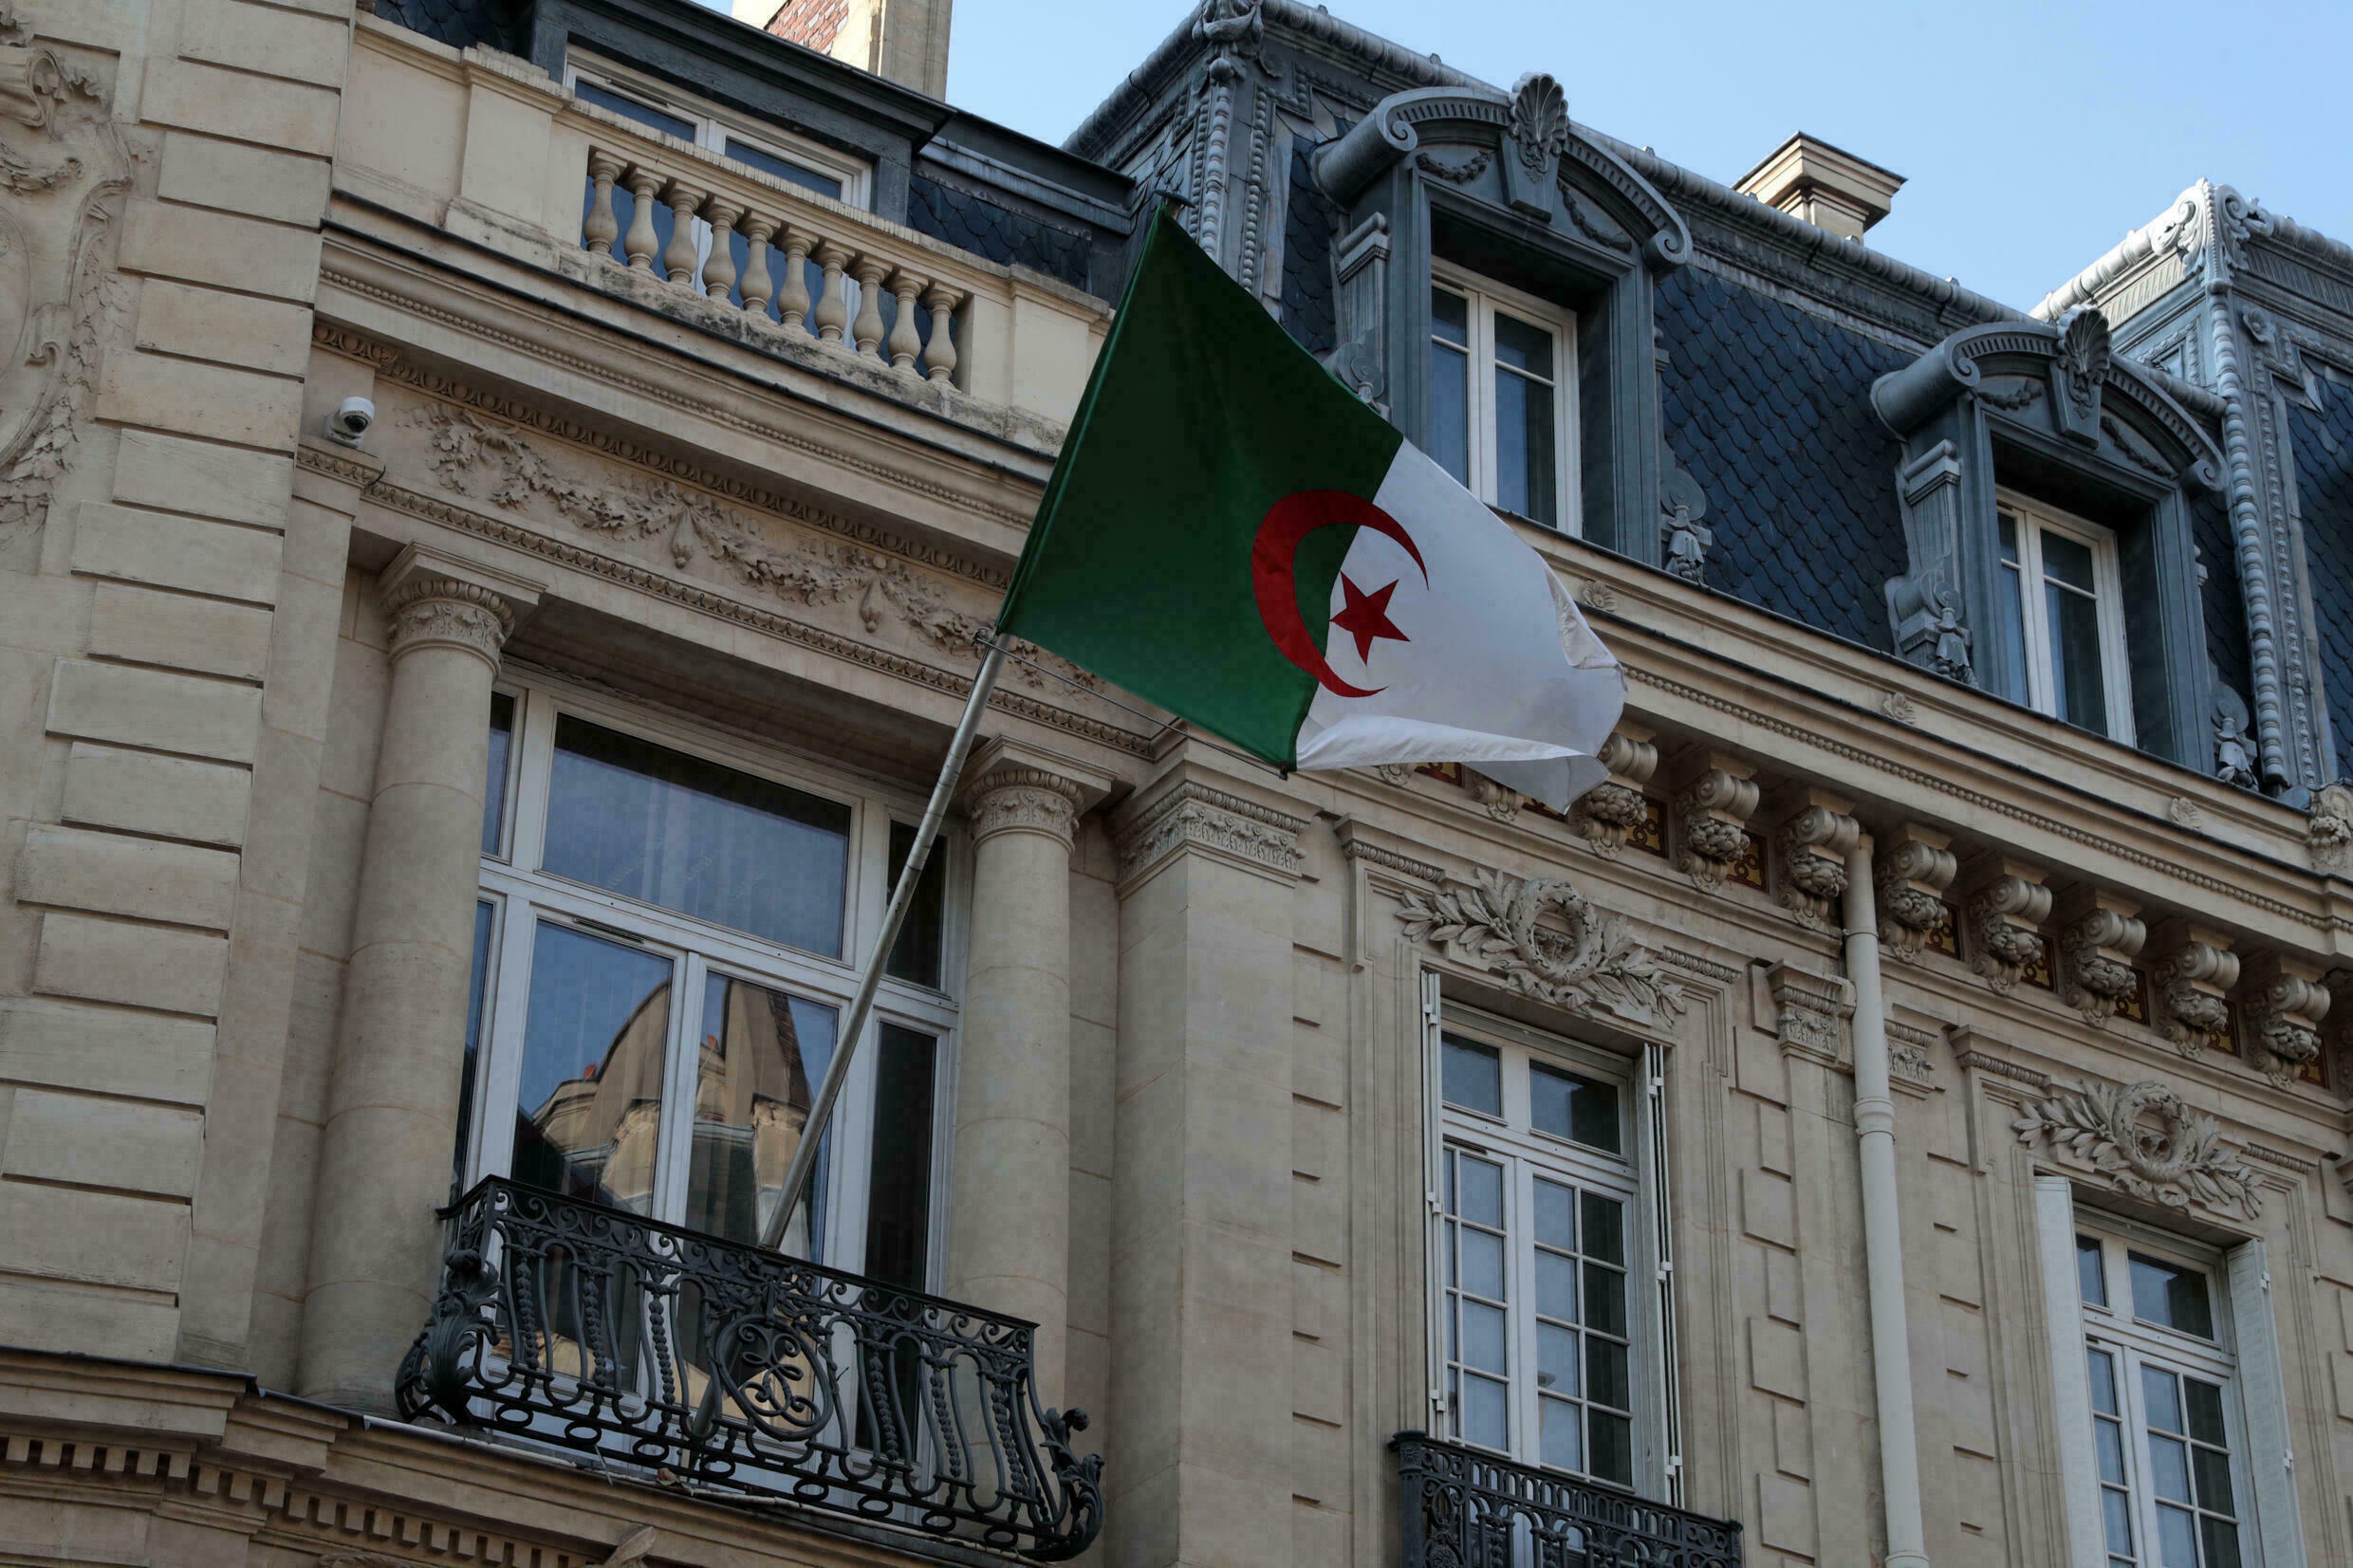  ماكرون لا ييأس في تحقيق الهدف الطموح الذي حدده لنفسه بوضع حد لإعدام الثقة المتبادل بين الجزائر وفرنسا (أ ف ب)